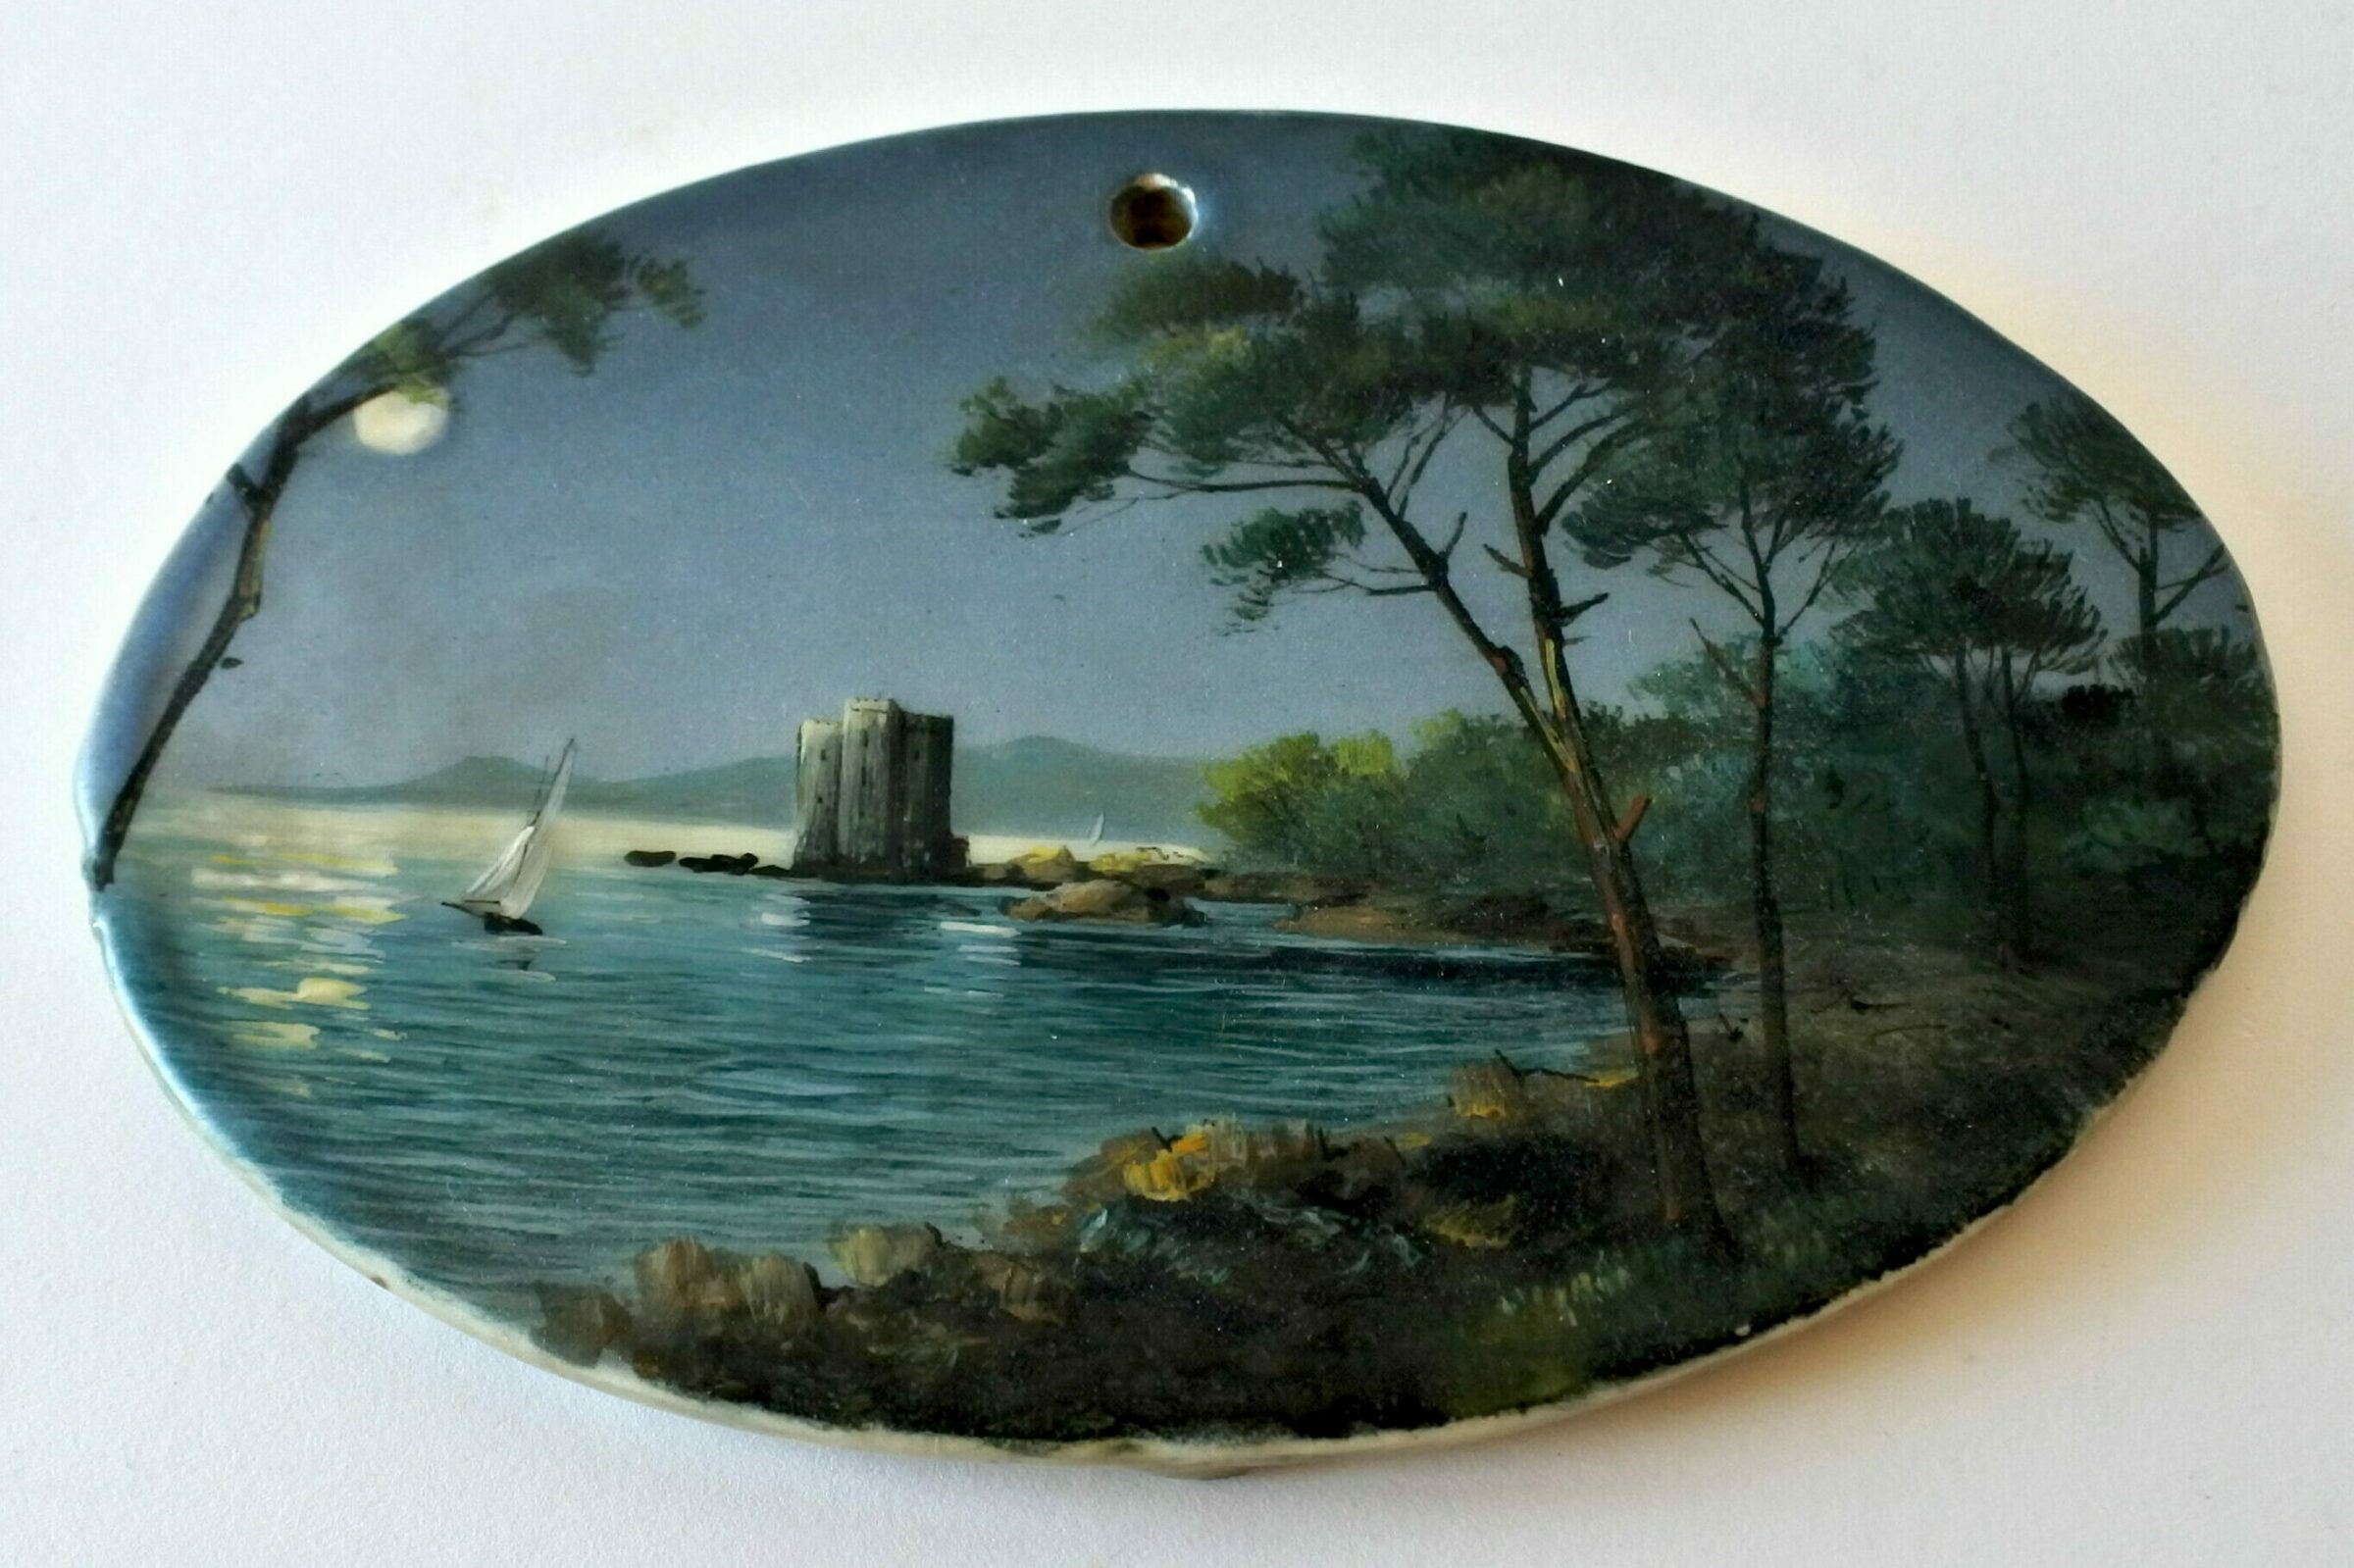 Piastra ovale da parete in ceramica dipinta con paesaggio lacustre